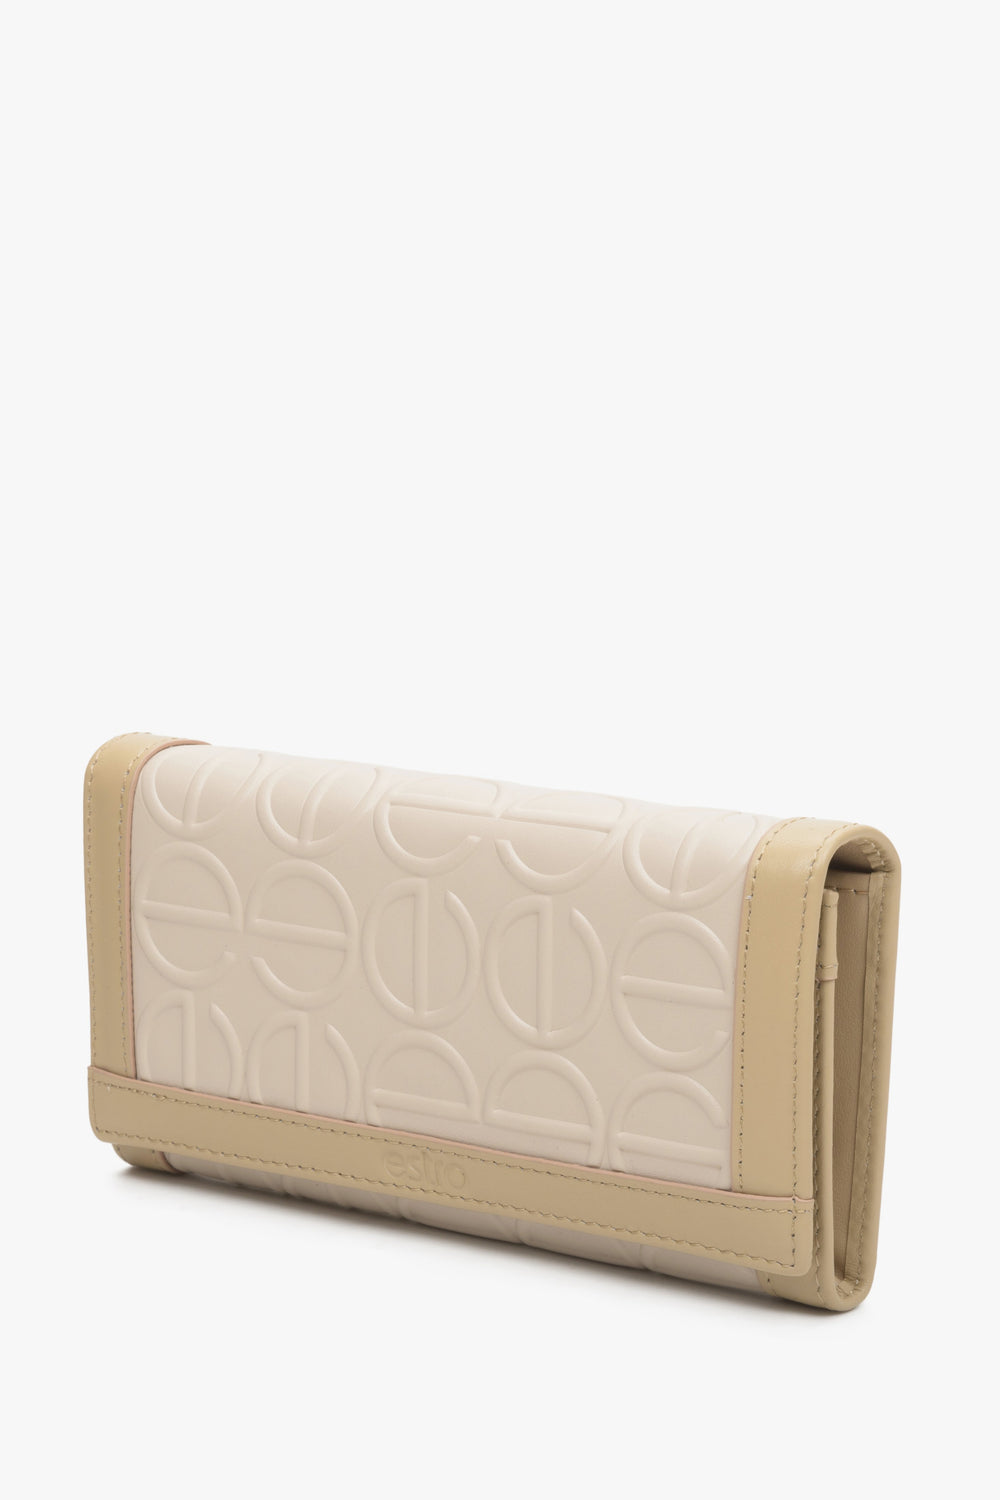 Large, beige women's leather wallet by Estro.